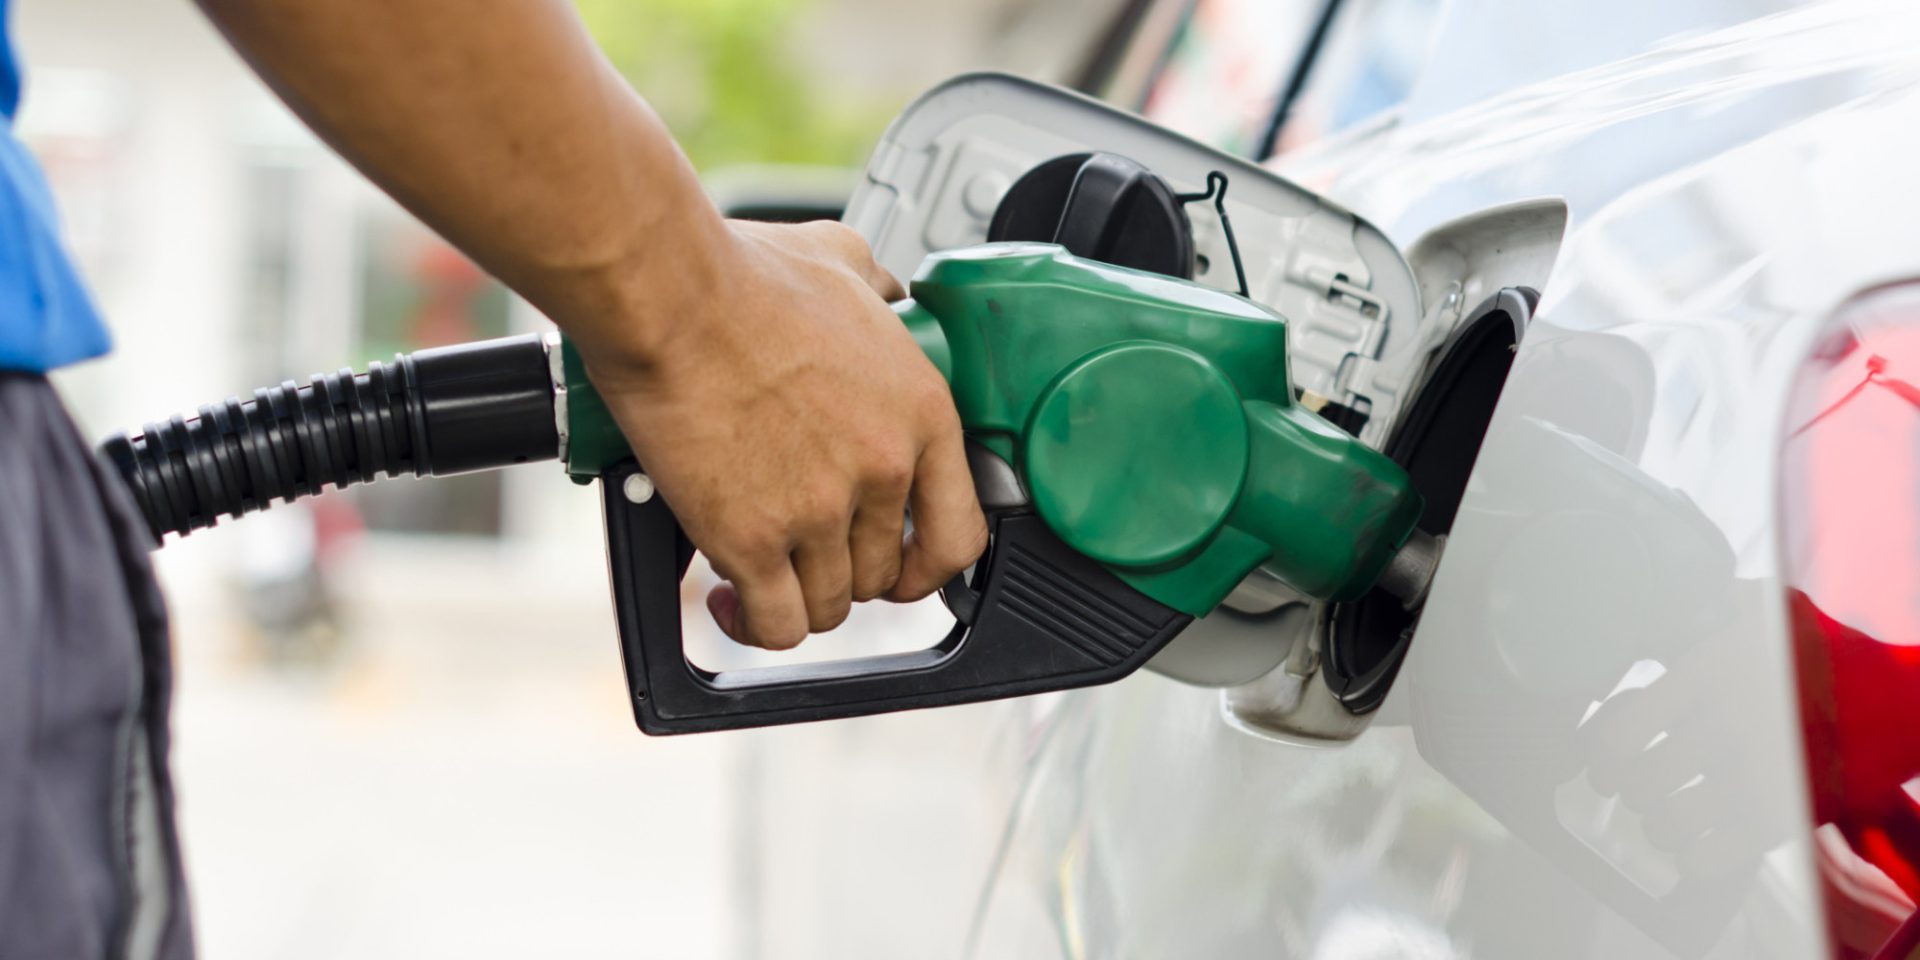 Preços dos combustíveis descem. Gasóleo em mínimos de 4 meses